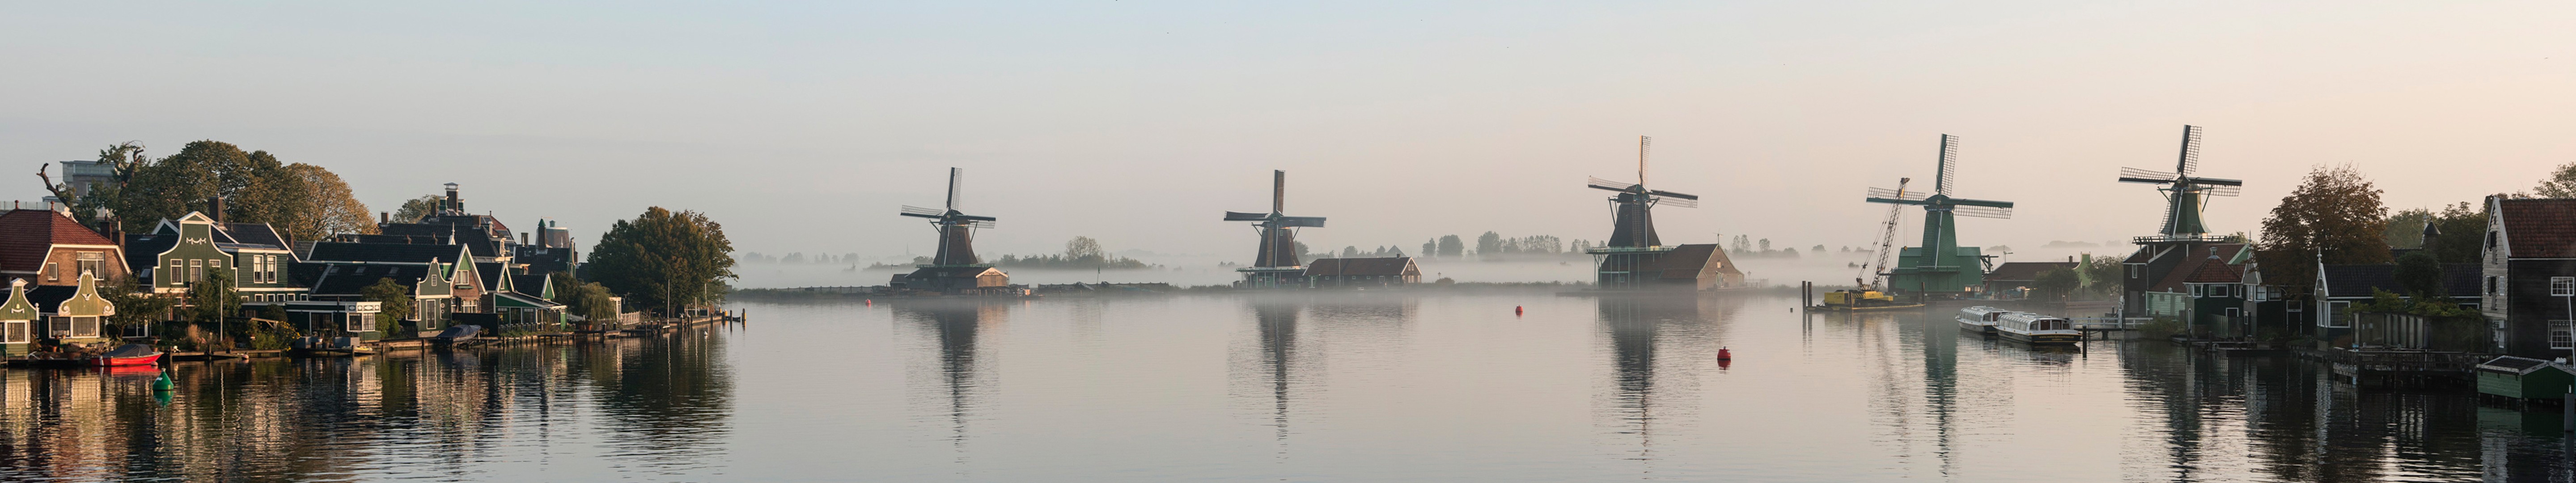 Netherlands, Windmill, Water, River, Sky, Town, Dutch, Holland, Zaanse Schans, Europe, Panorama Wallpaper